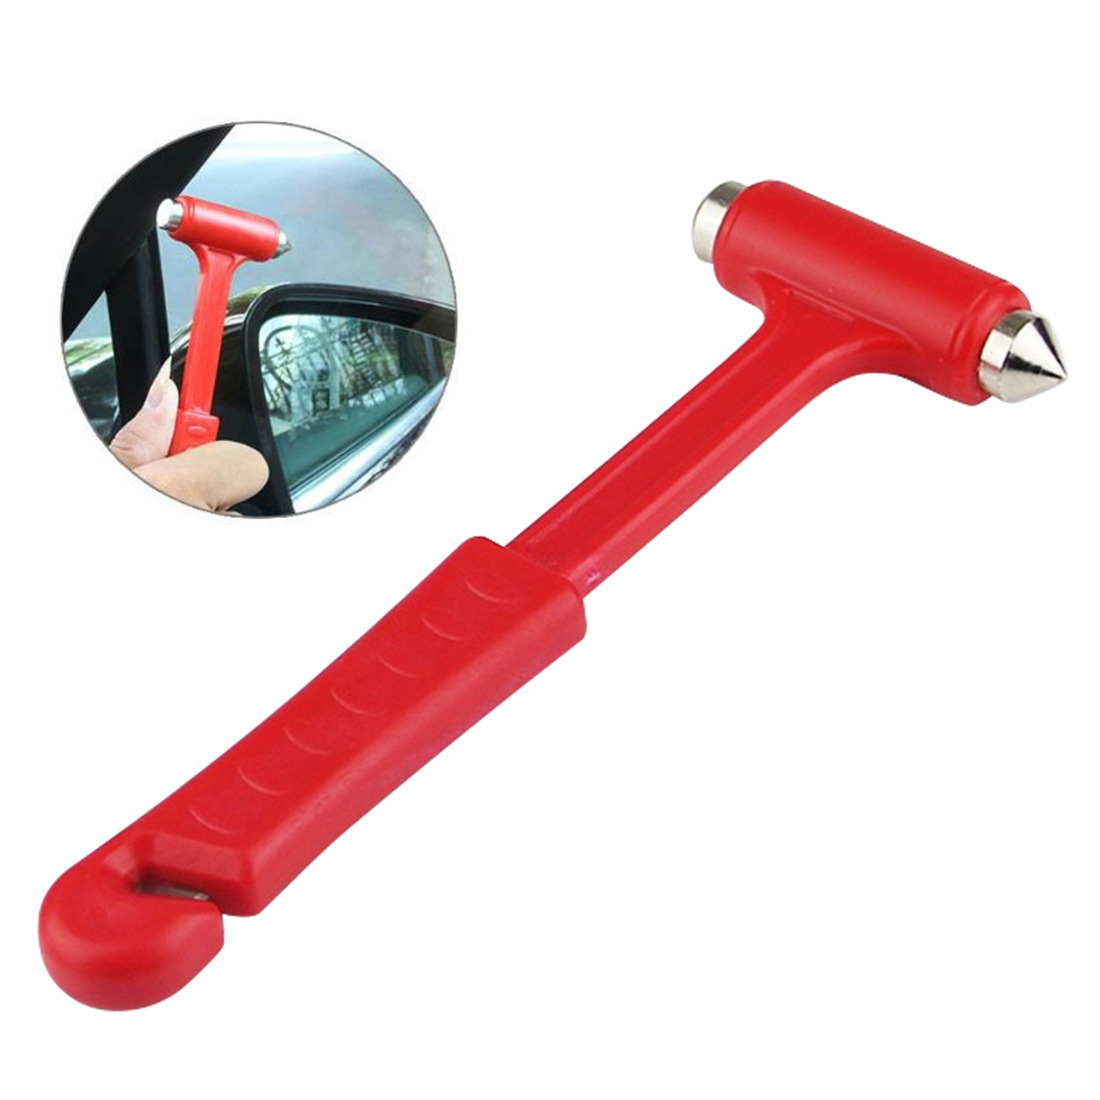 2-Pack AutoSicherheitshammer, Auto Emergency Escape Hammer mit  Fensterbrecher und Sicherheitsgurtschneider, markantes rotes Notfall- Fluchtwerkzeug für Autounfälle